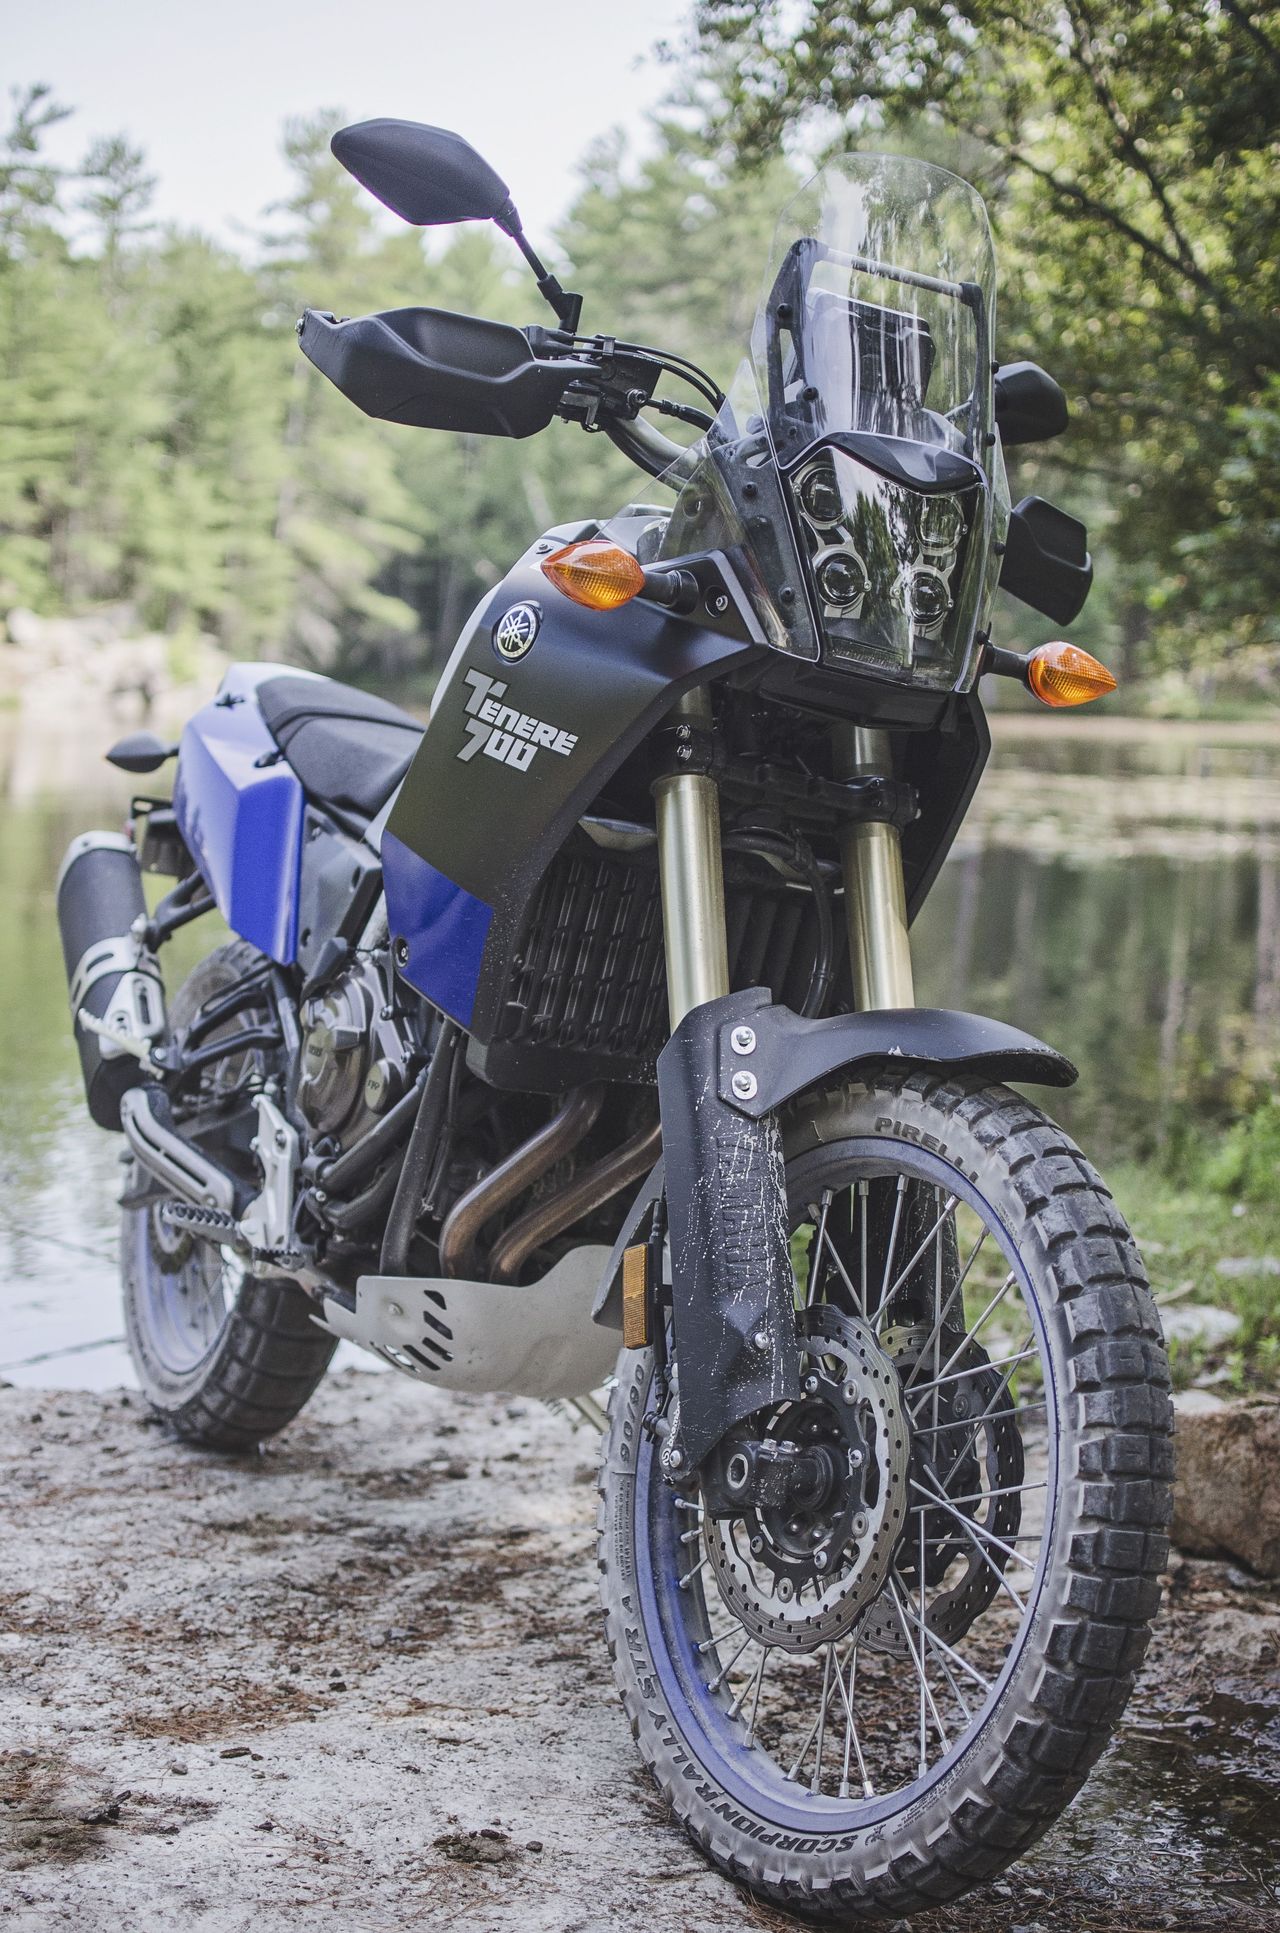 Review: Yamaha Ténéré 700 Motorcycle